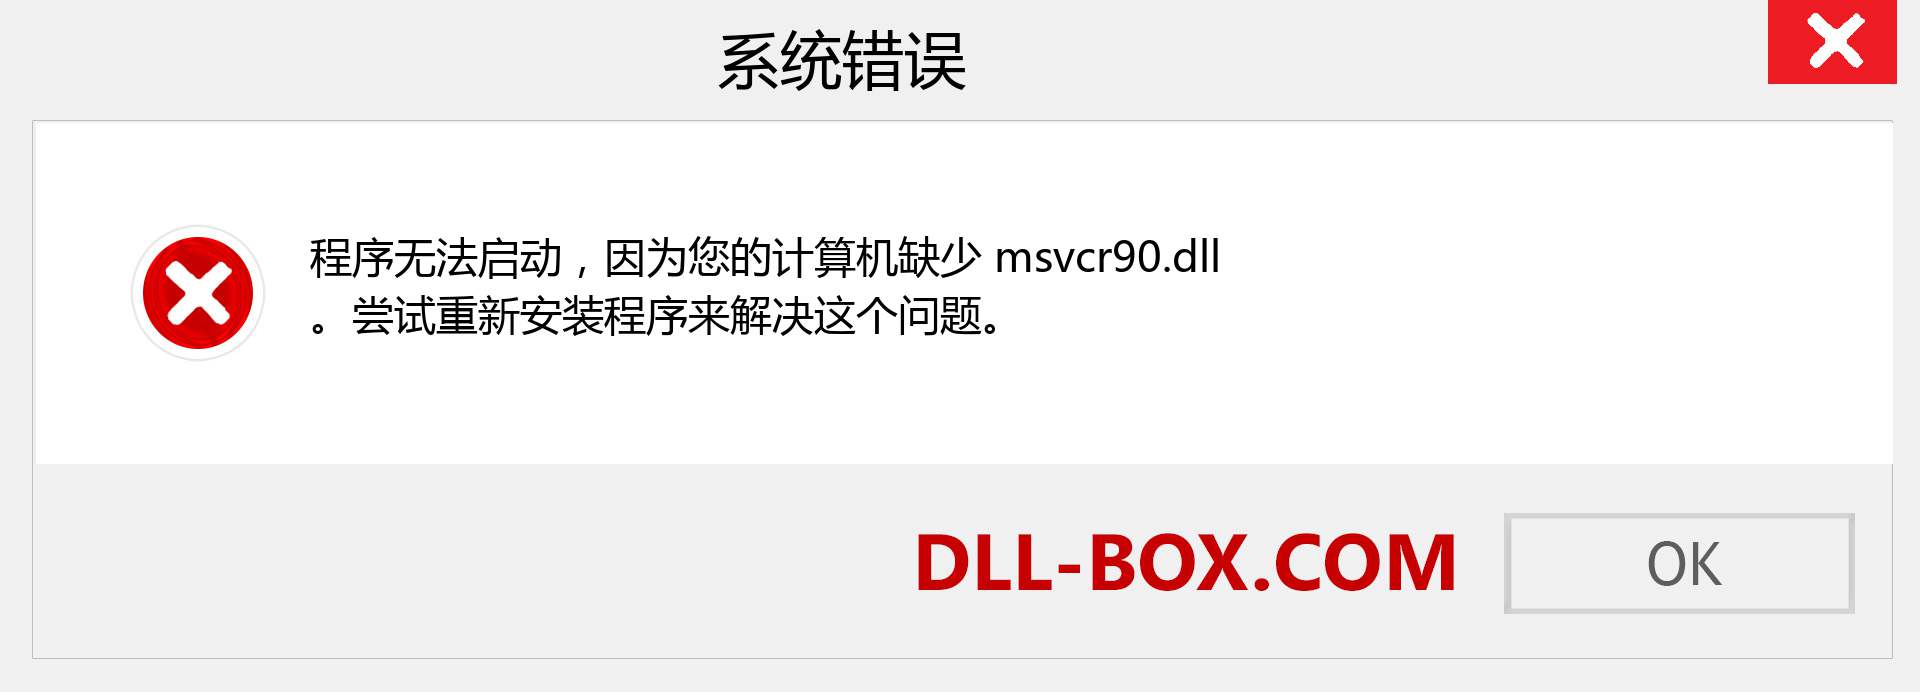 msvcr90.dll 文件丢失？。 适用于 Windows 7、8、10 的下载 - 修复 Windows、照片、图像上的 msvcr90 dll 丢失错误